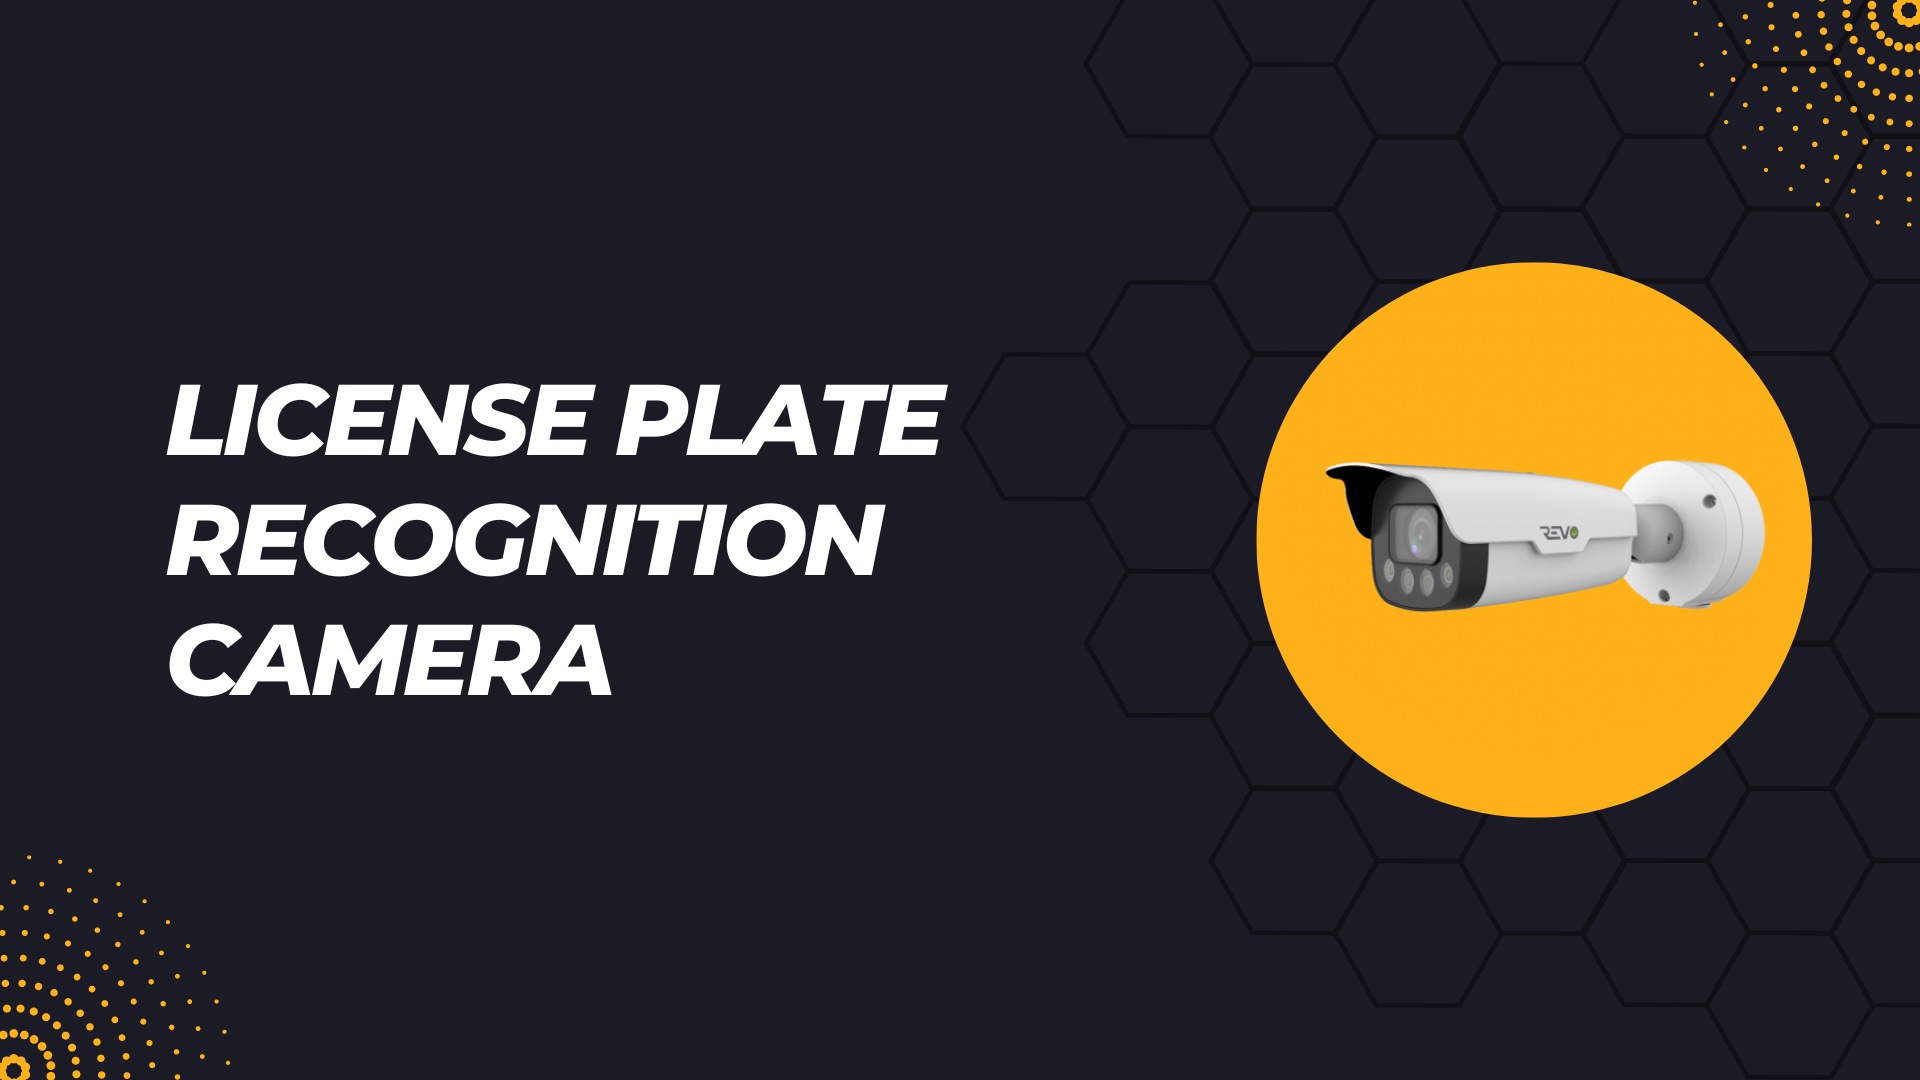 revo license plate recognition camera